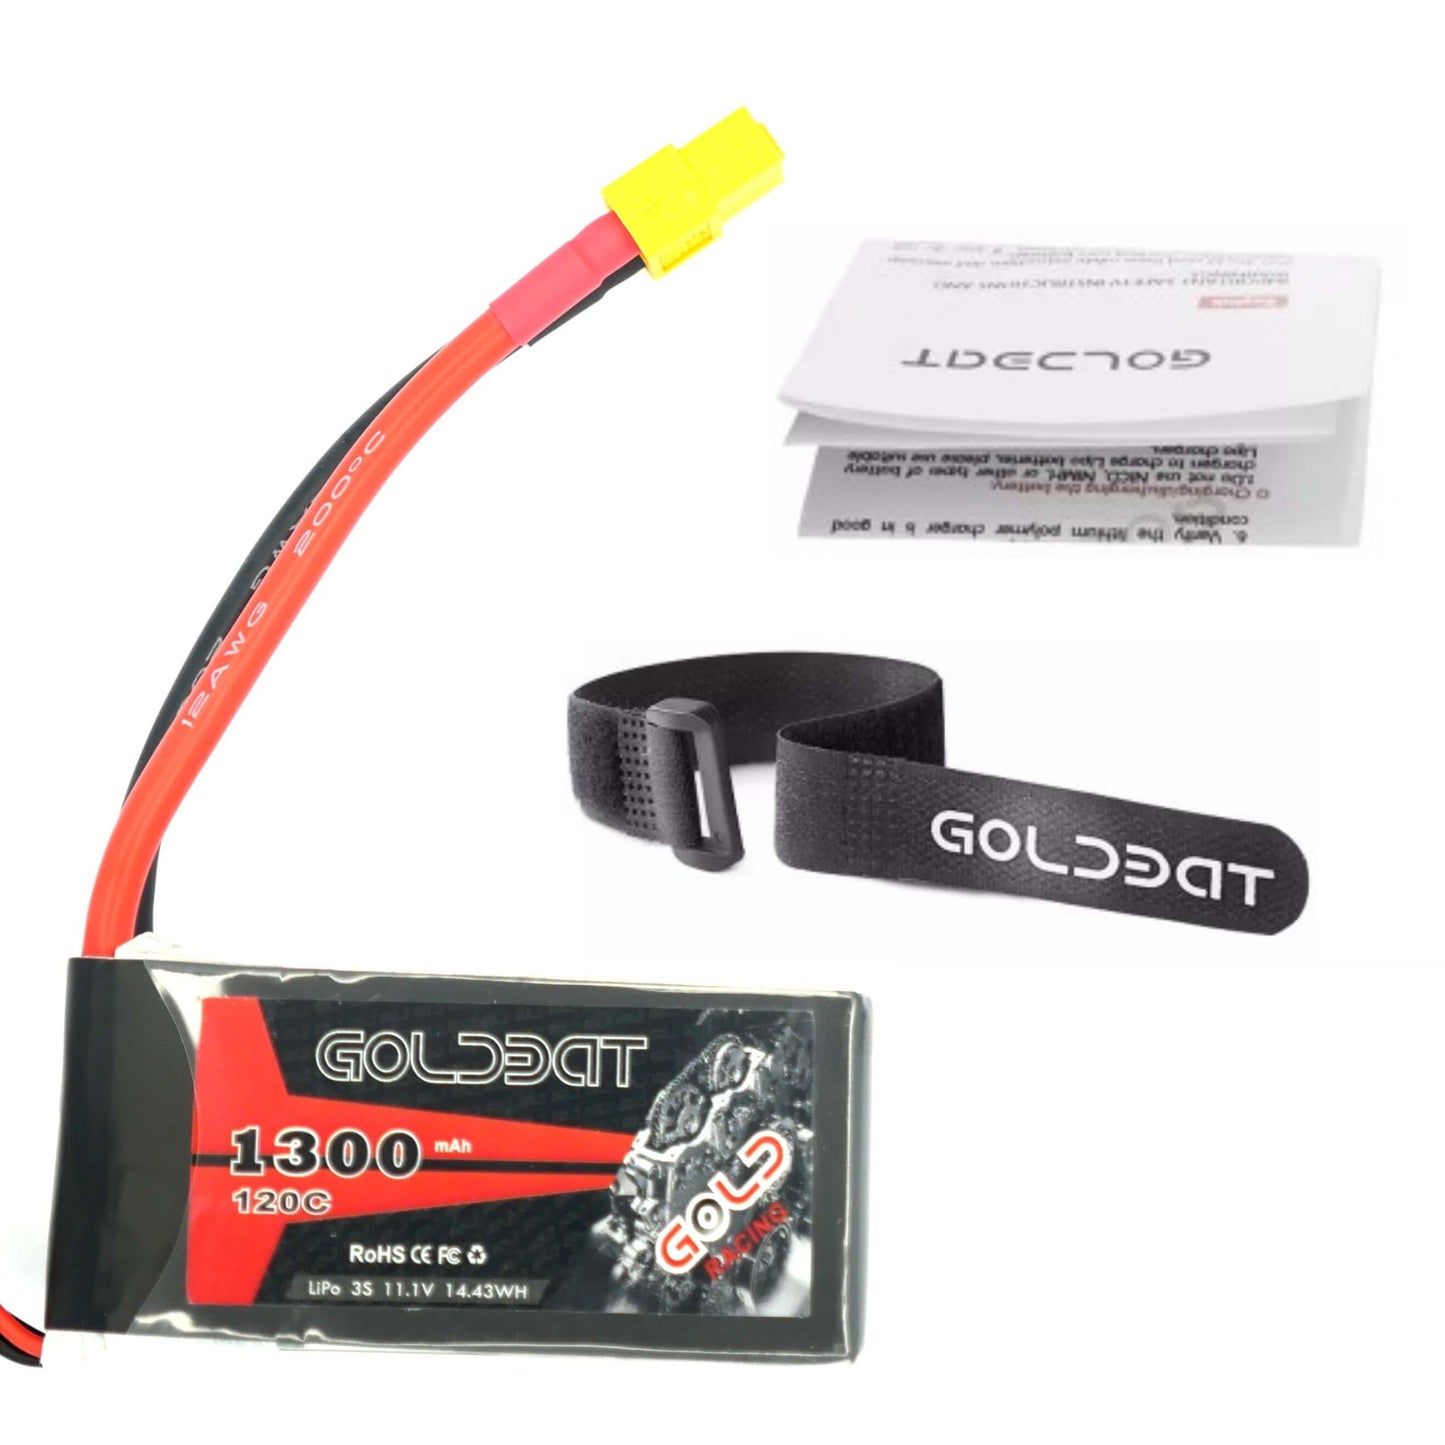 GoldBat 1300mAh 3S 11.1v 120C LiPo RC Battery